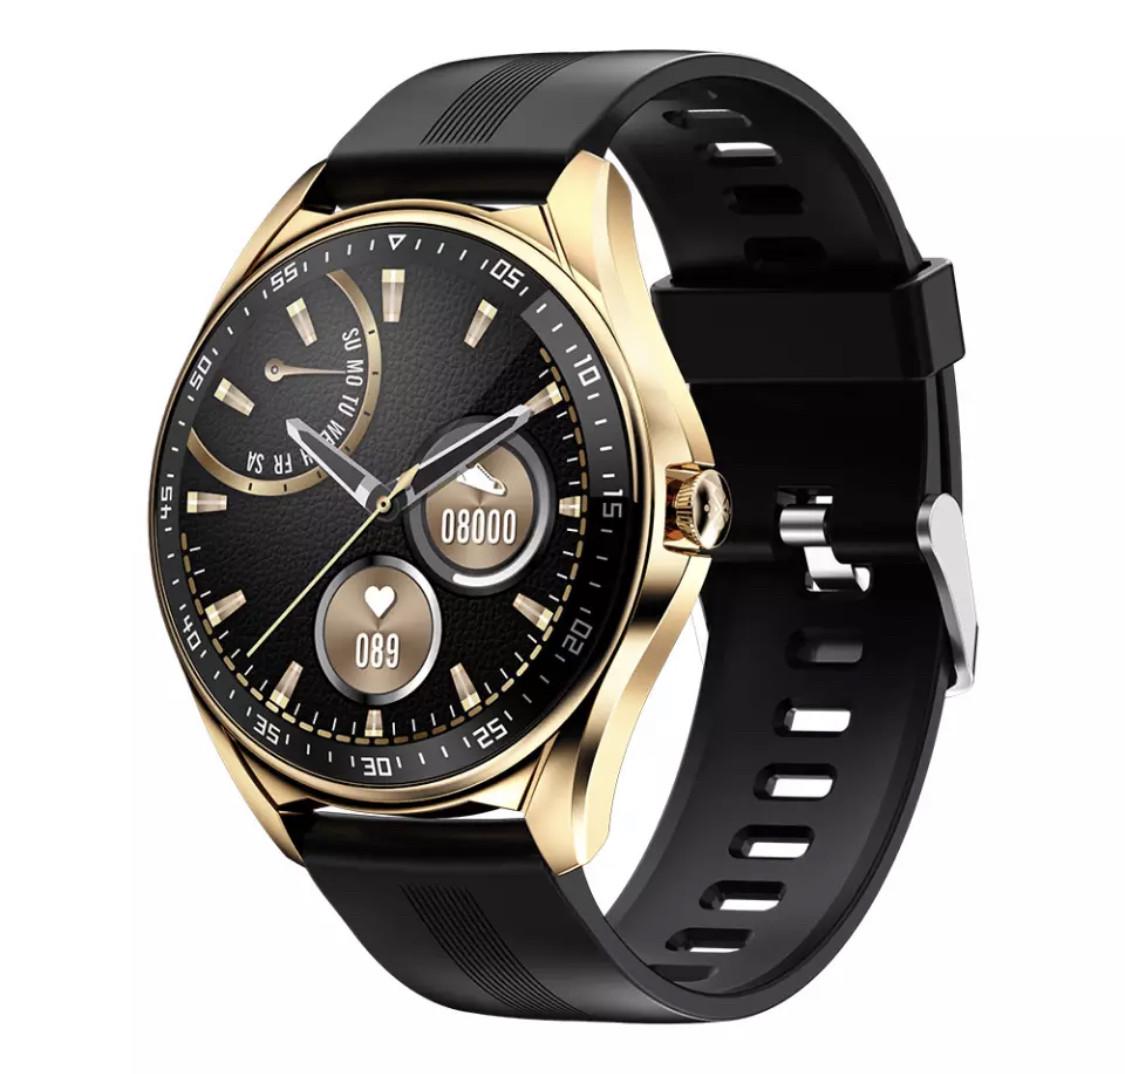 Мужские смарт часы Lemfo E1 Gold Black Smart Watch Bluetooth (6687)